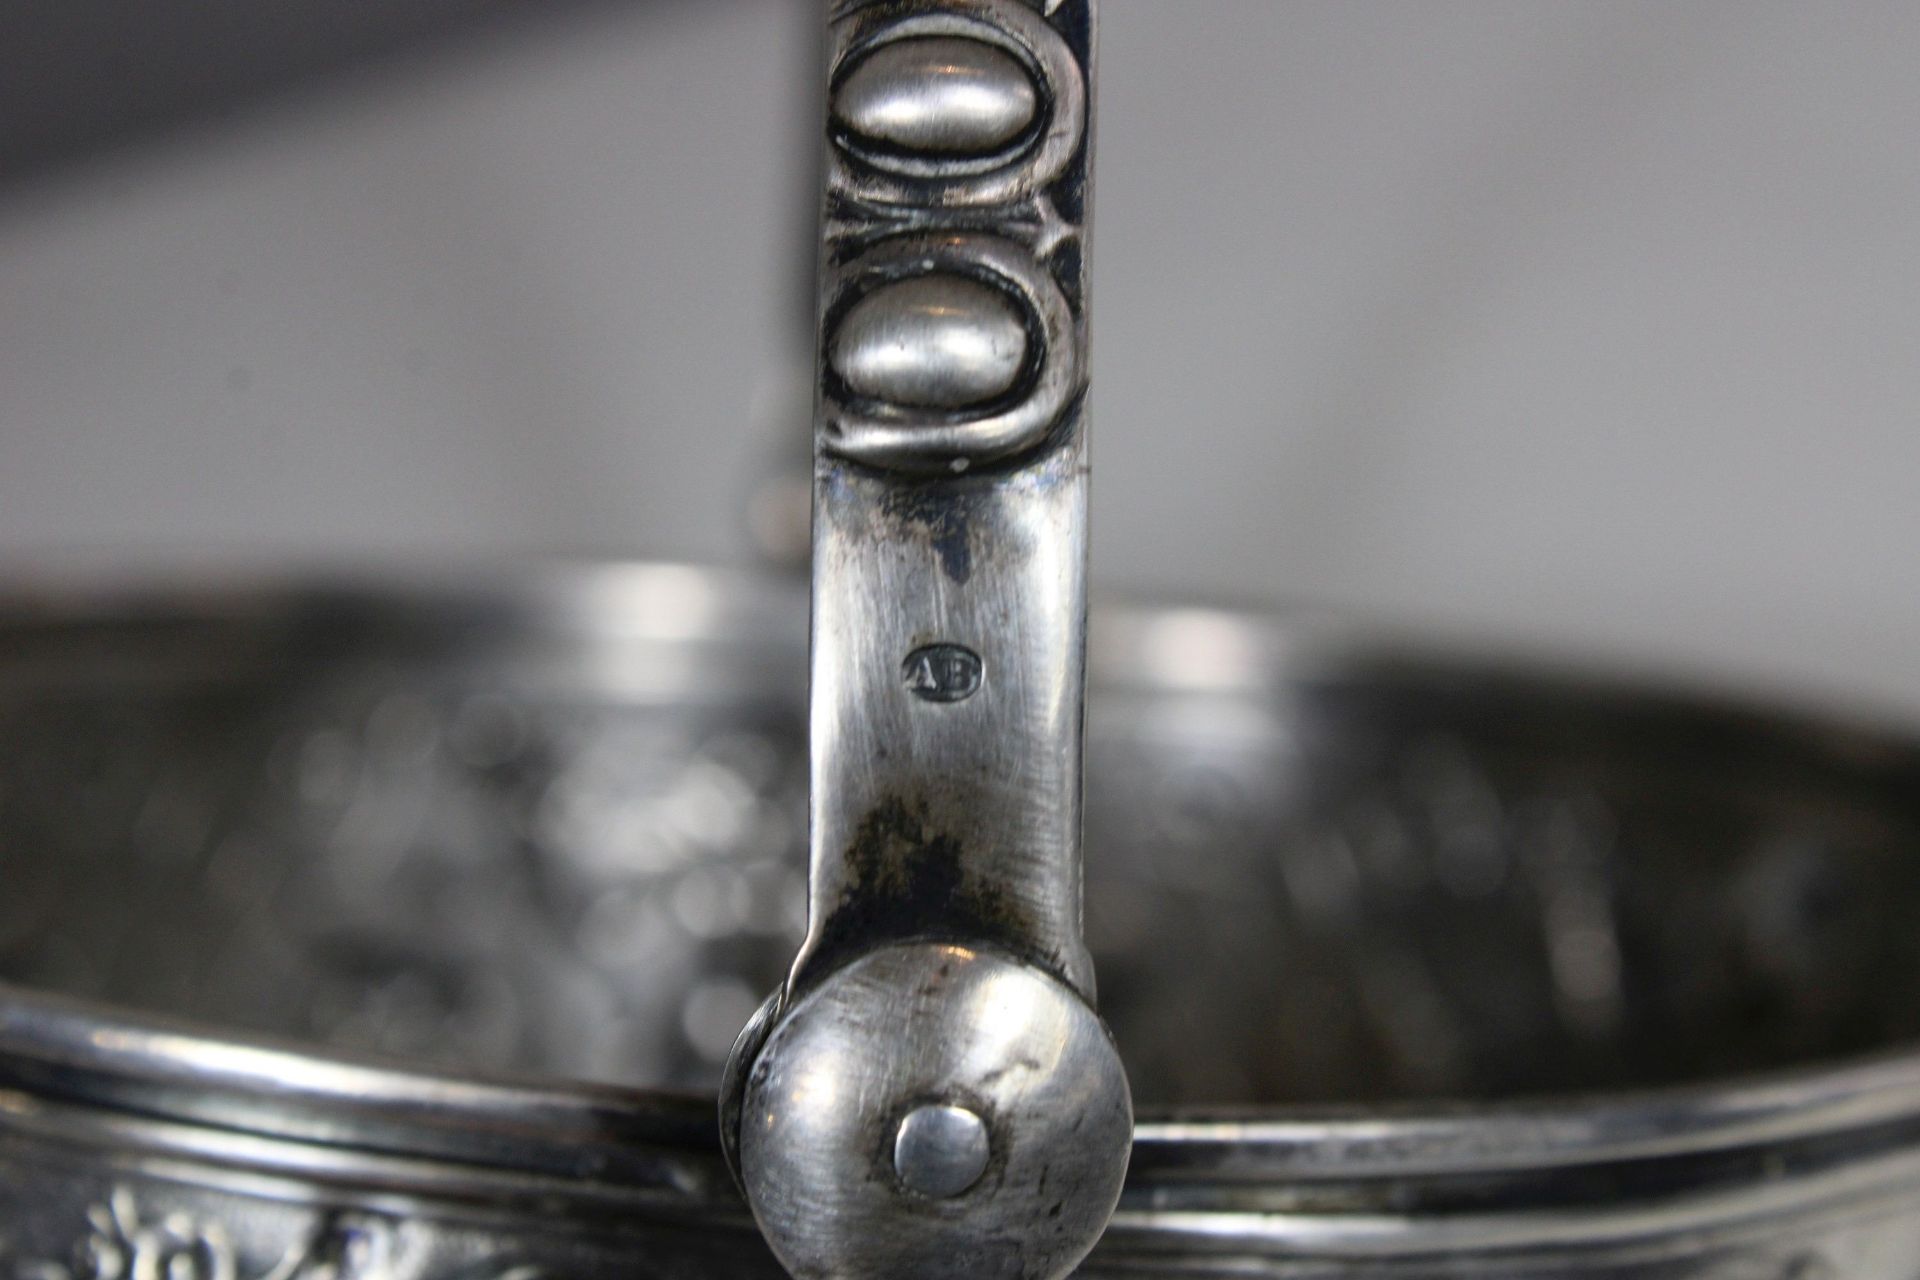 Korb, Silber, Tschechoslowakei, Putti- und Blumendekor, Maße: Durchmesser 13,5 cm, H. 8,5 cm, - Bild 2 aus 4